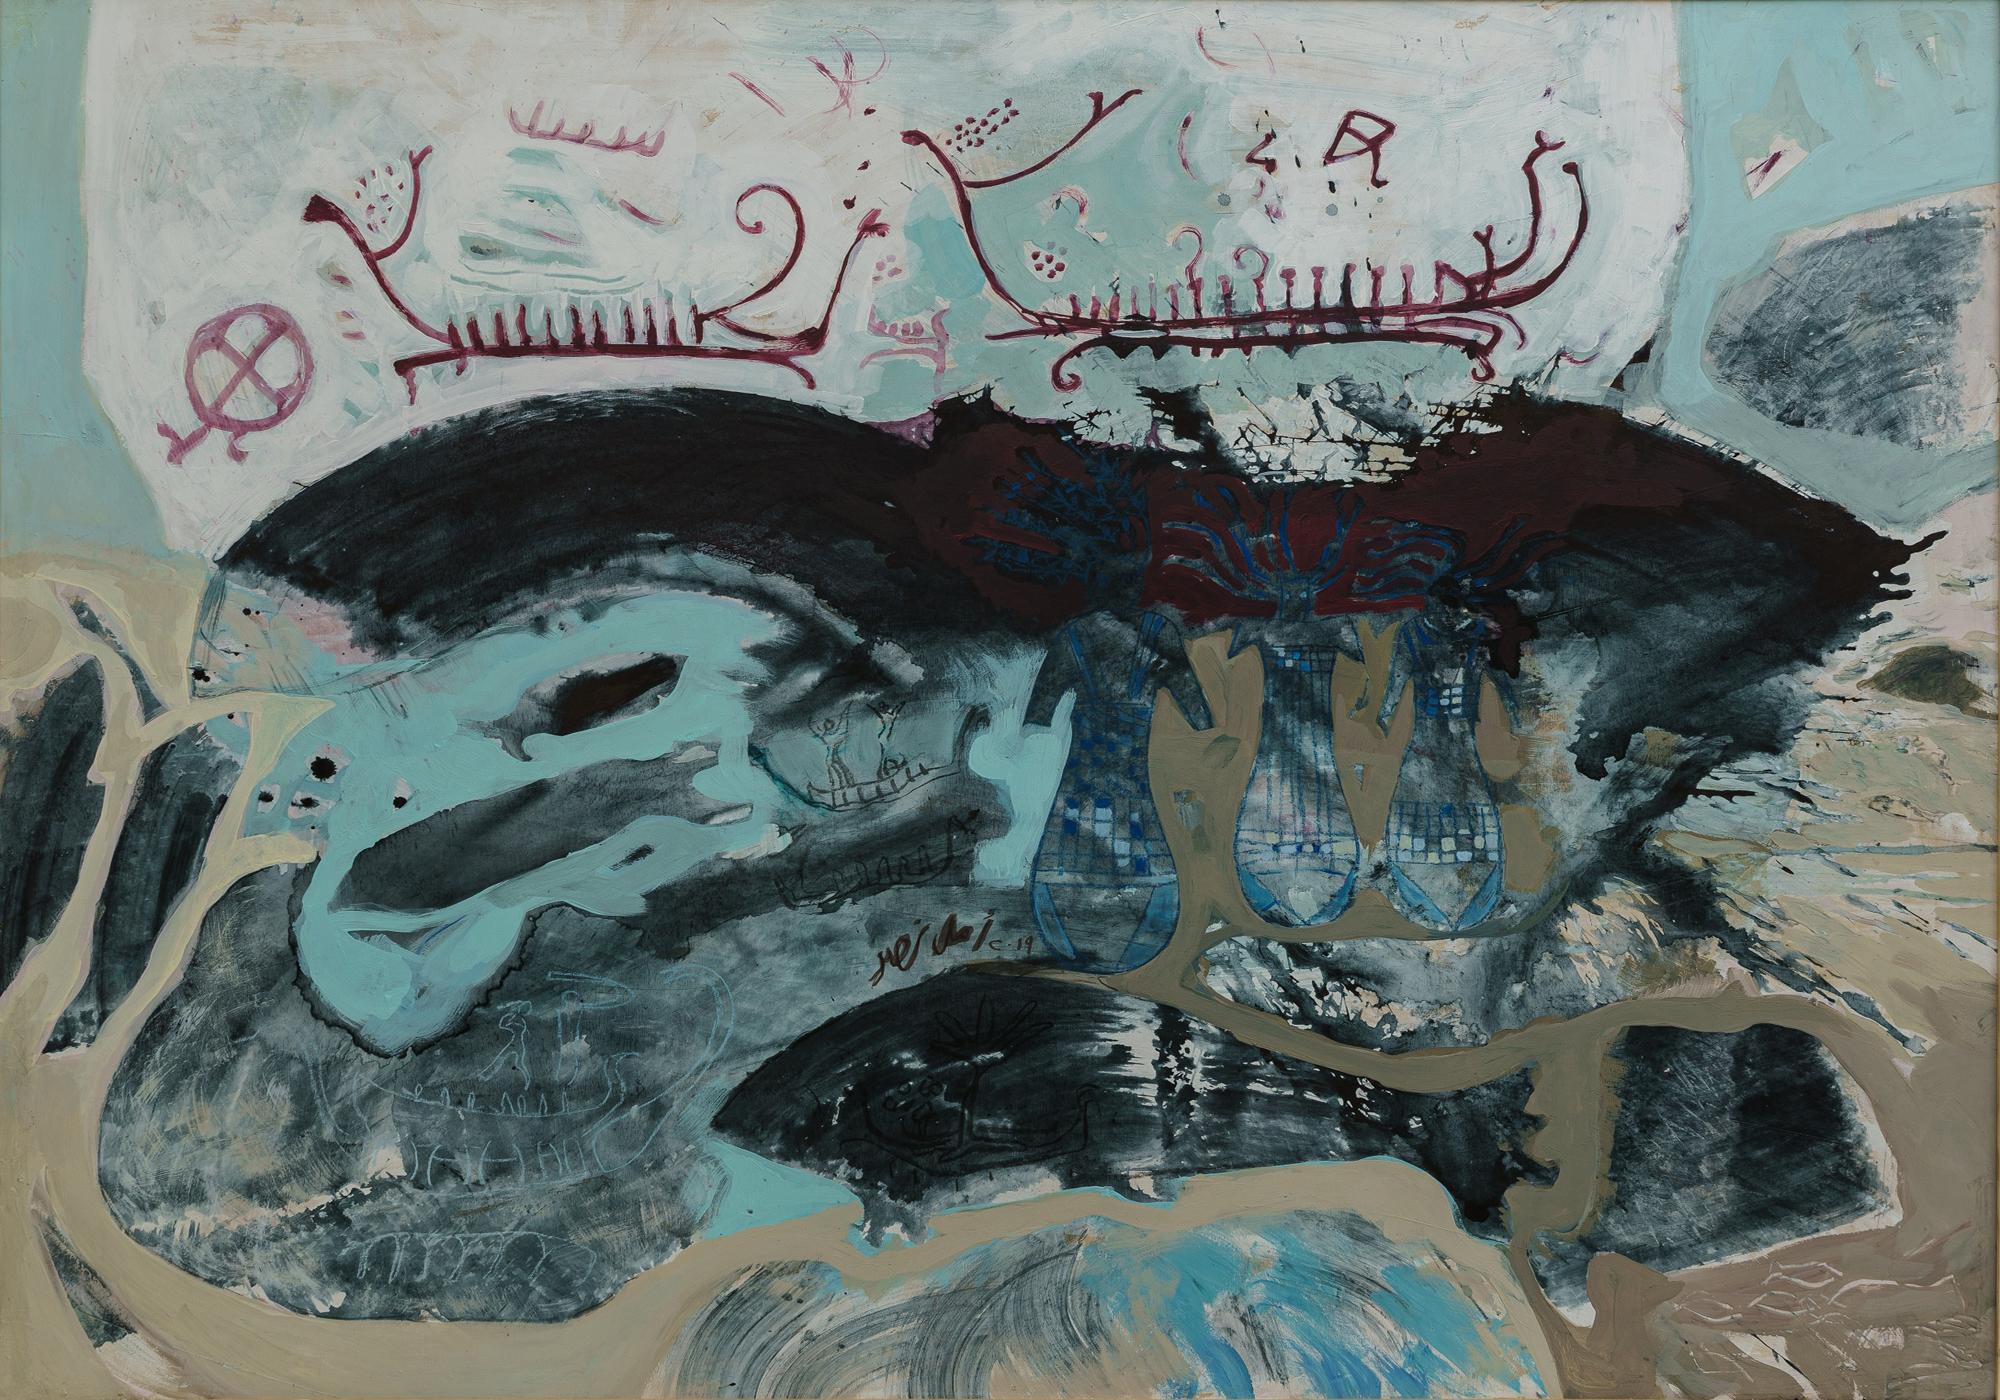 "Langboote" Abstrakte Malerei 39" x 47" Zoll von Amal Nasr

Serie "New Horizon" (Neuer Horizont) 

Es ist ein ständiges Bestreben, die Freude an der Entdeckung und das Vergnügen der ersten Erfahrung wiederherzustellen, und die Leidenschaft, zu einem